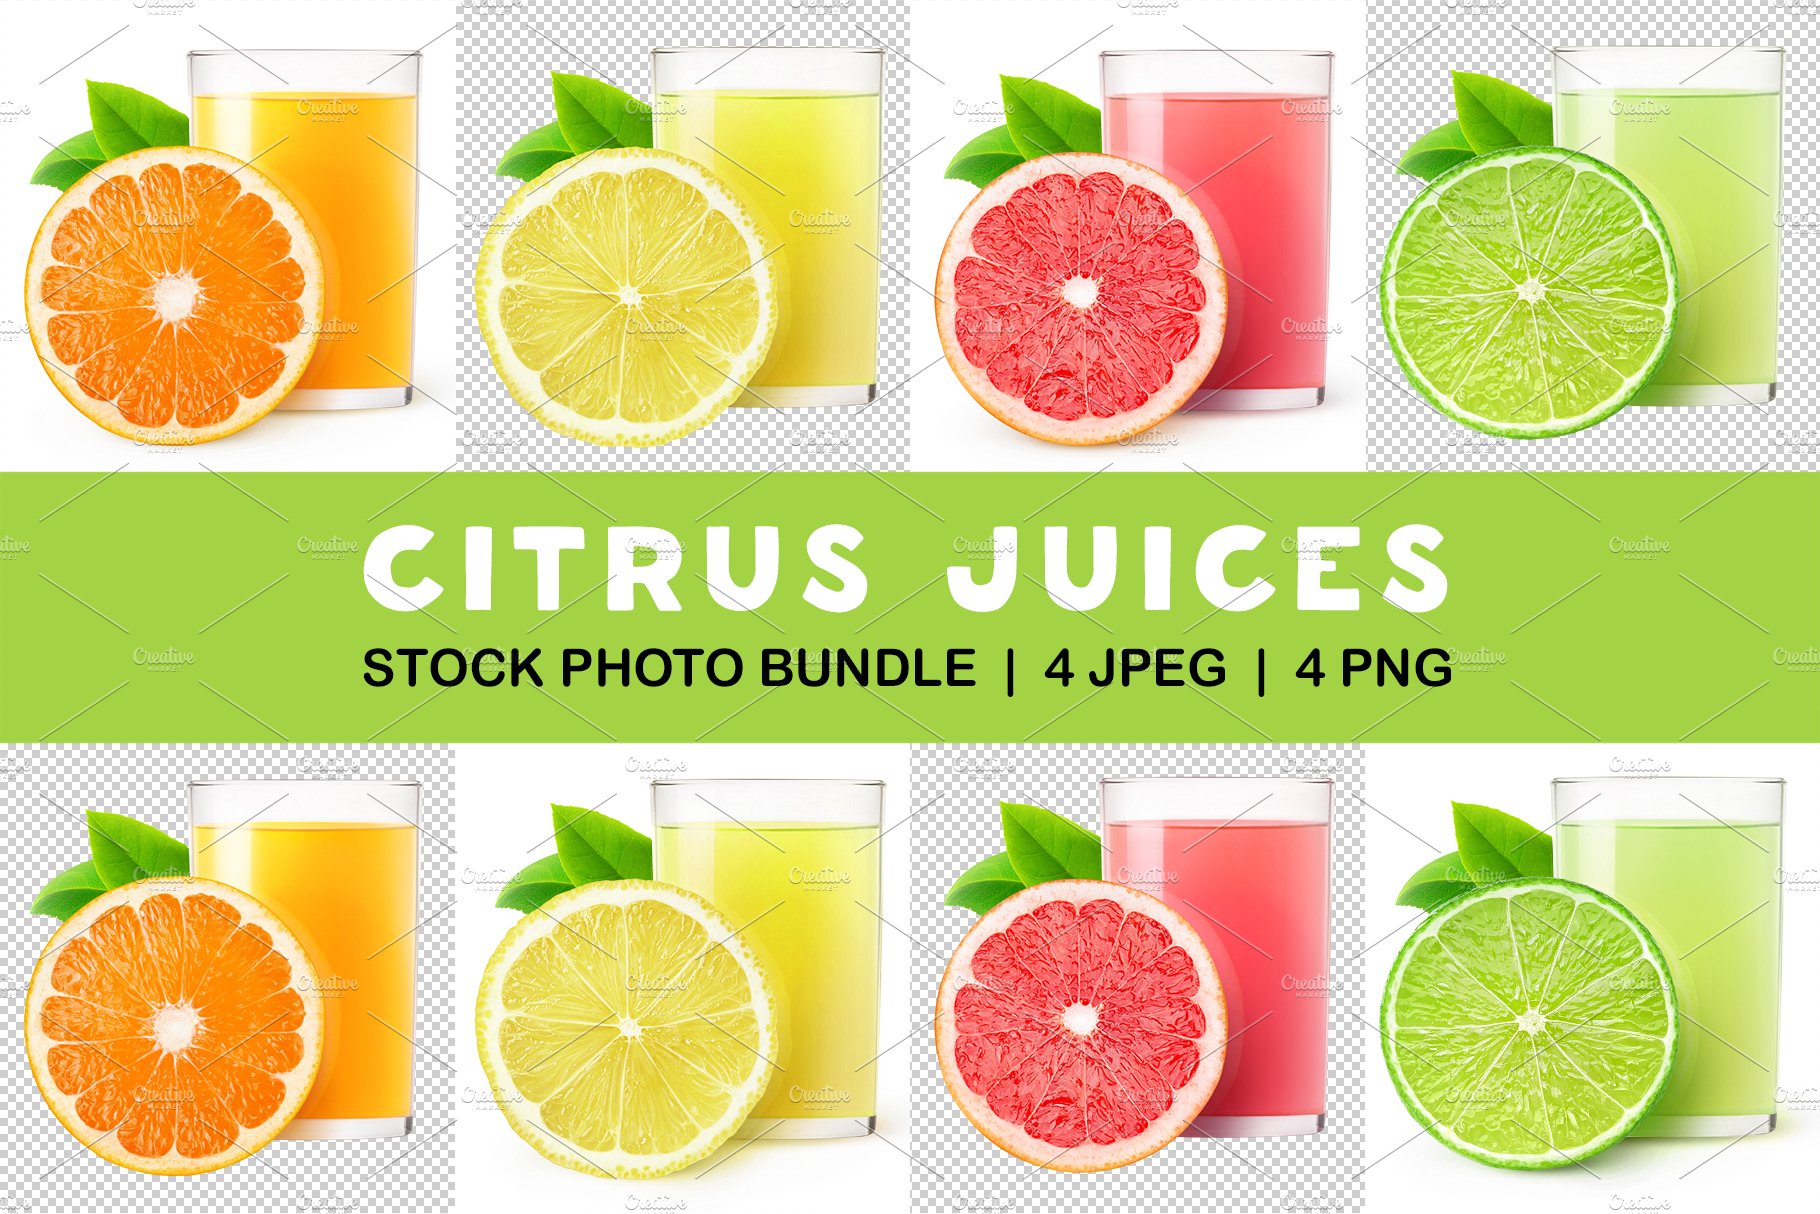 Citrus juices cover image.